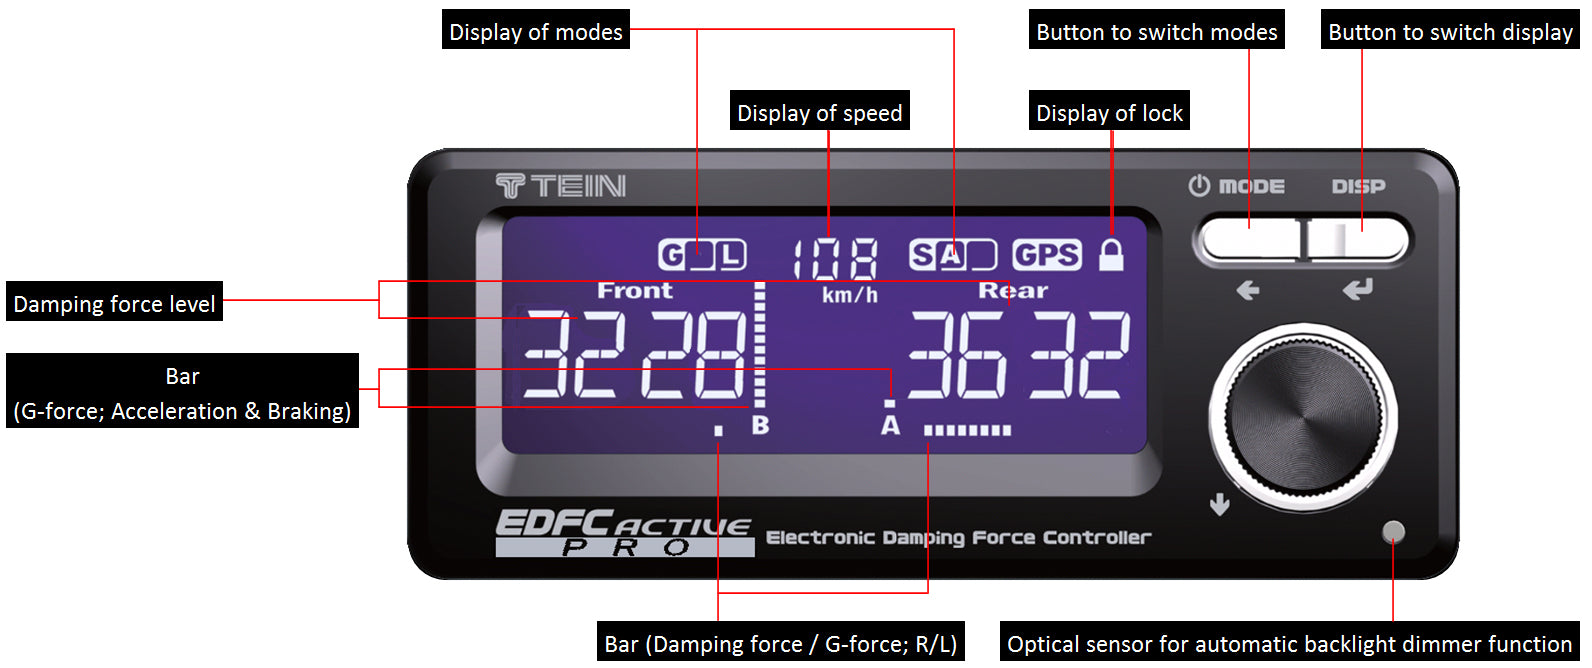 Tein EDFC Active Pro + GPS